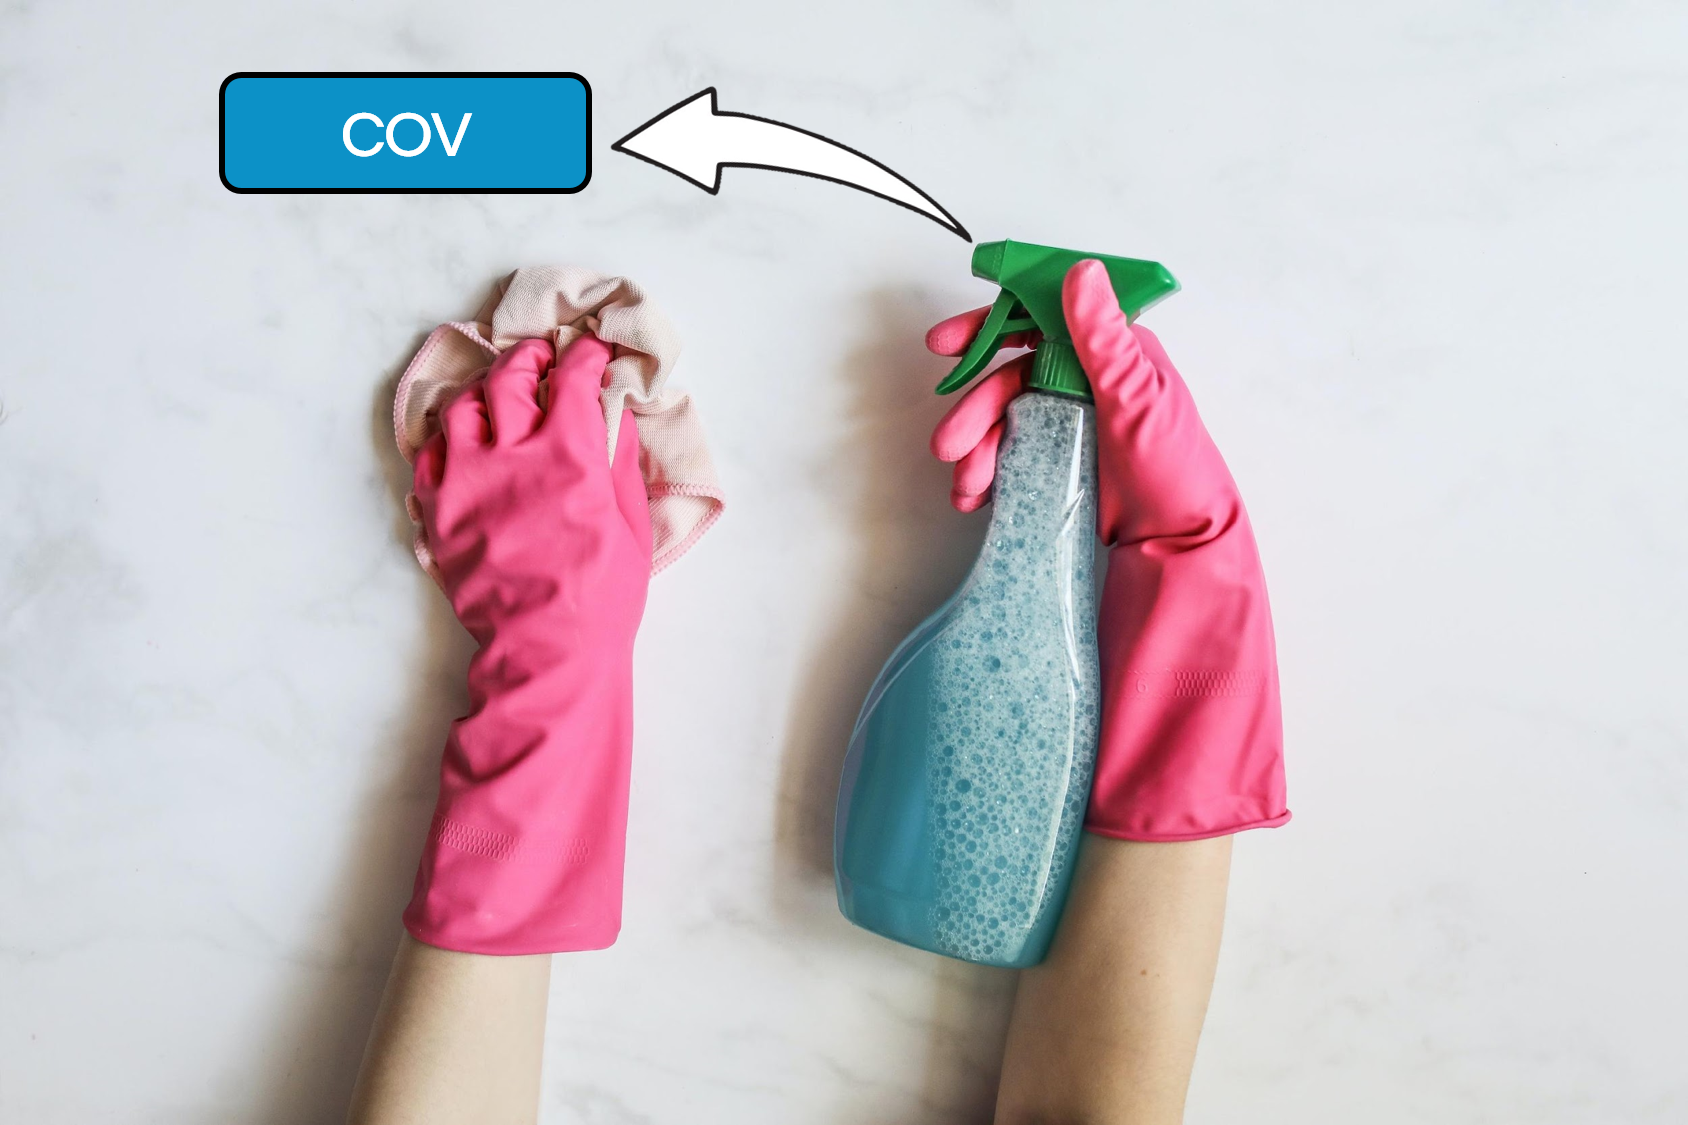 Une personne portant des gants roses pour nettoyer une surface avec un produit de nettoyage